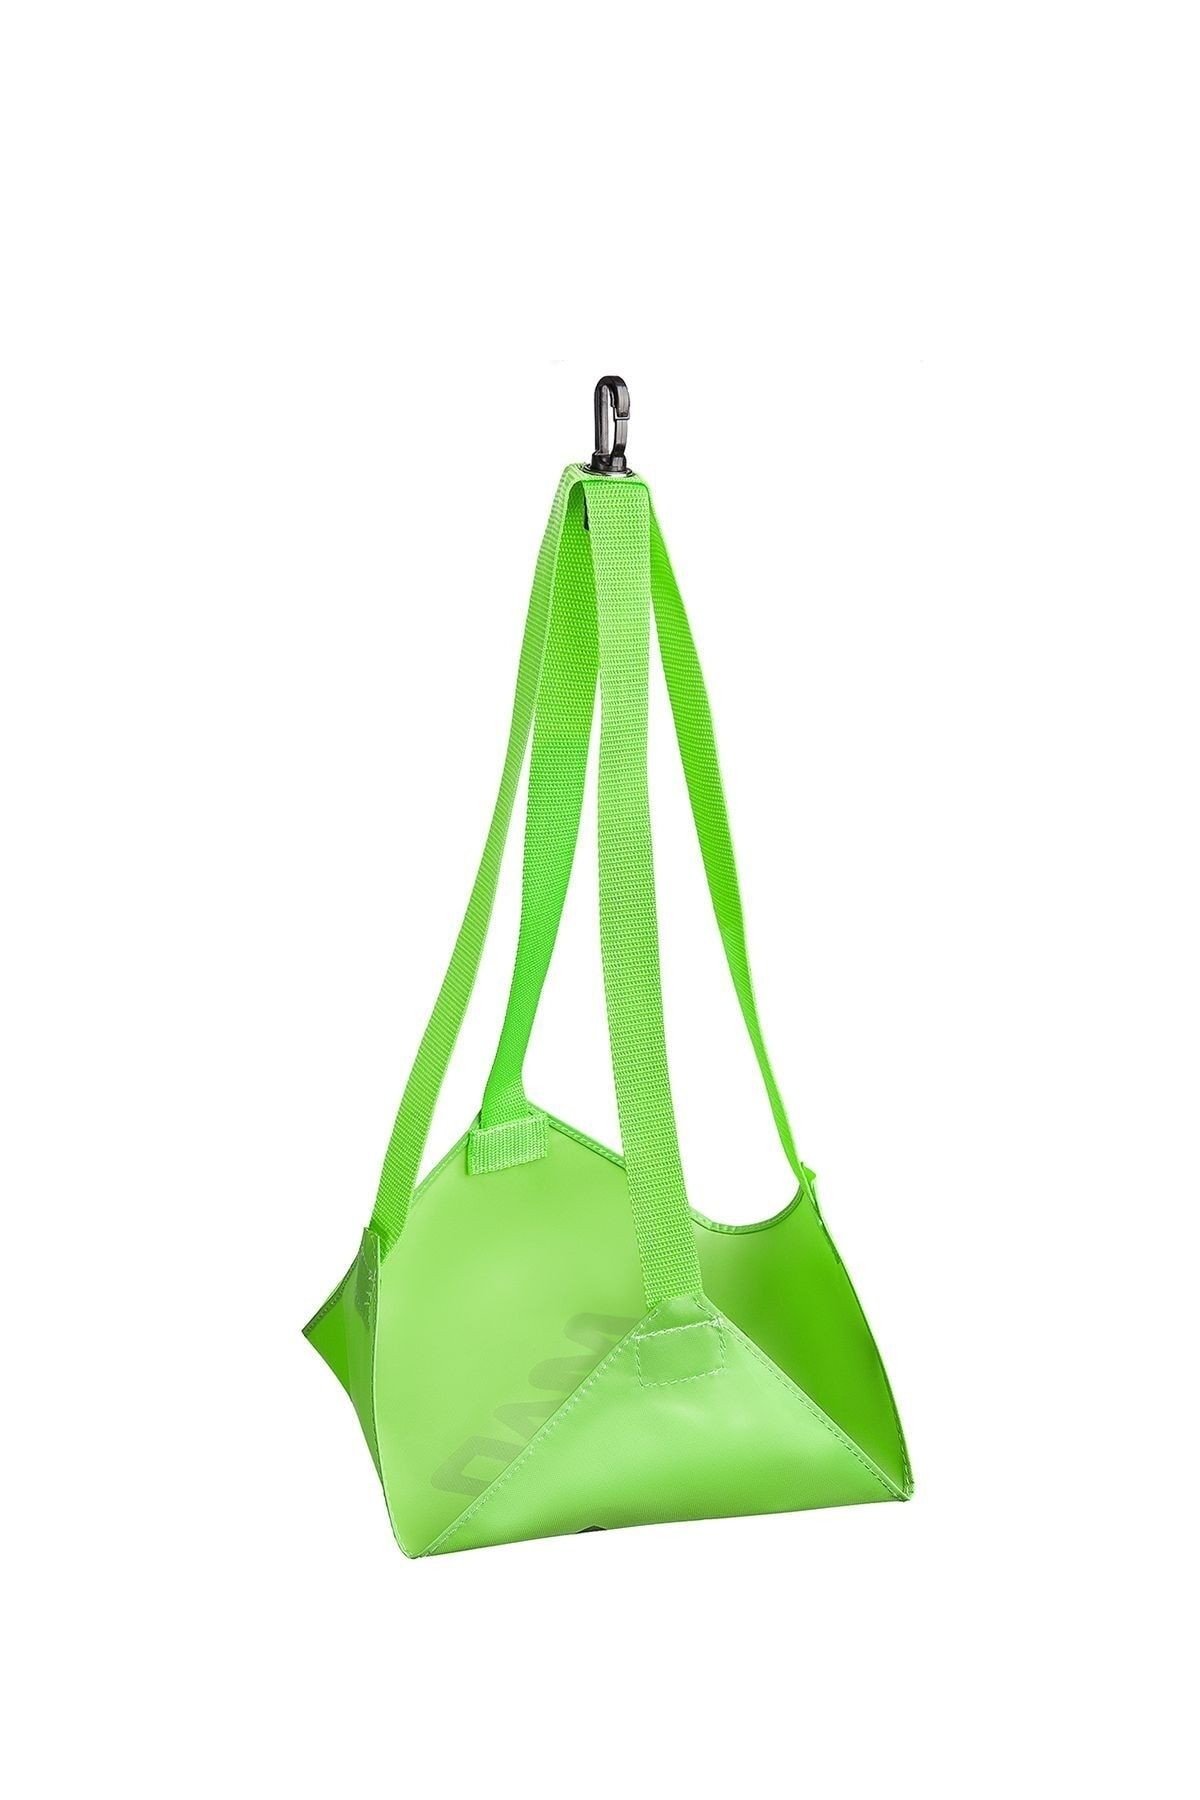 Mad Wave Drag Bag Drag Bag, 20*20 Cm, Green